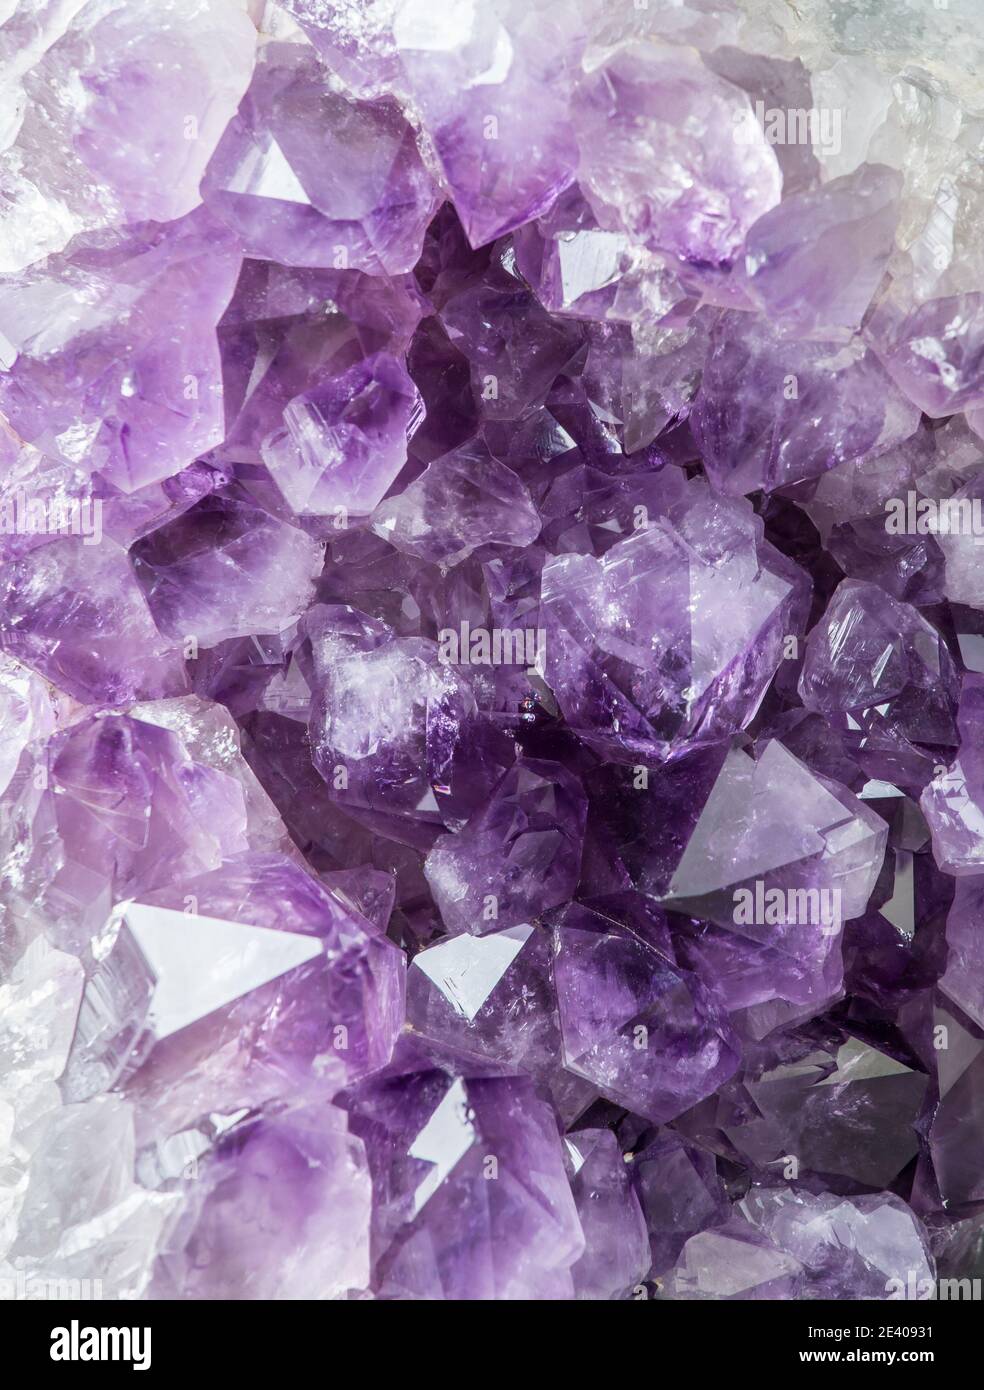 Vue rapprochée du grand amas de cristaux d'améthyste violet. Concept d'arrière-plan magique ésotérique. Banque D'Images